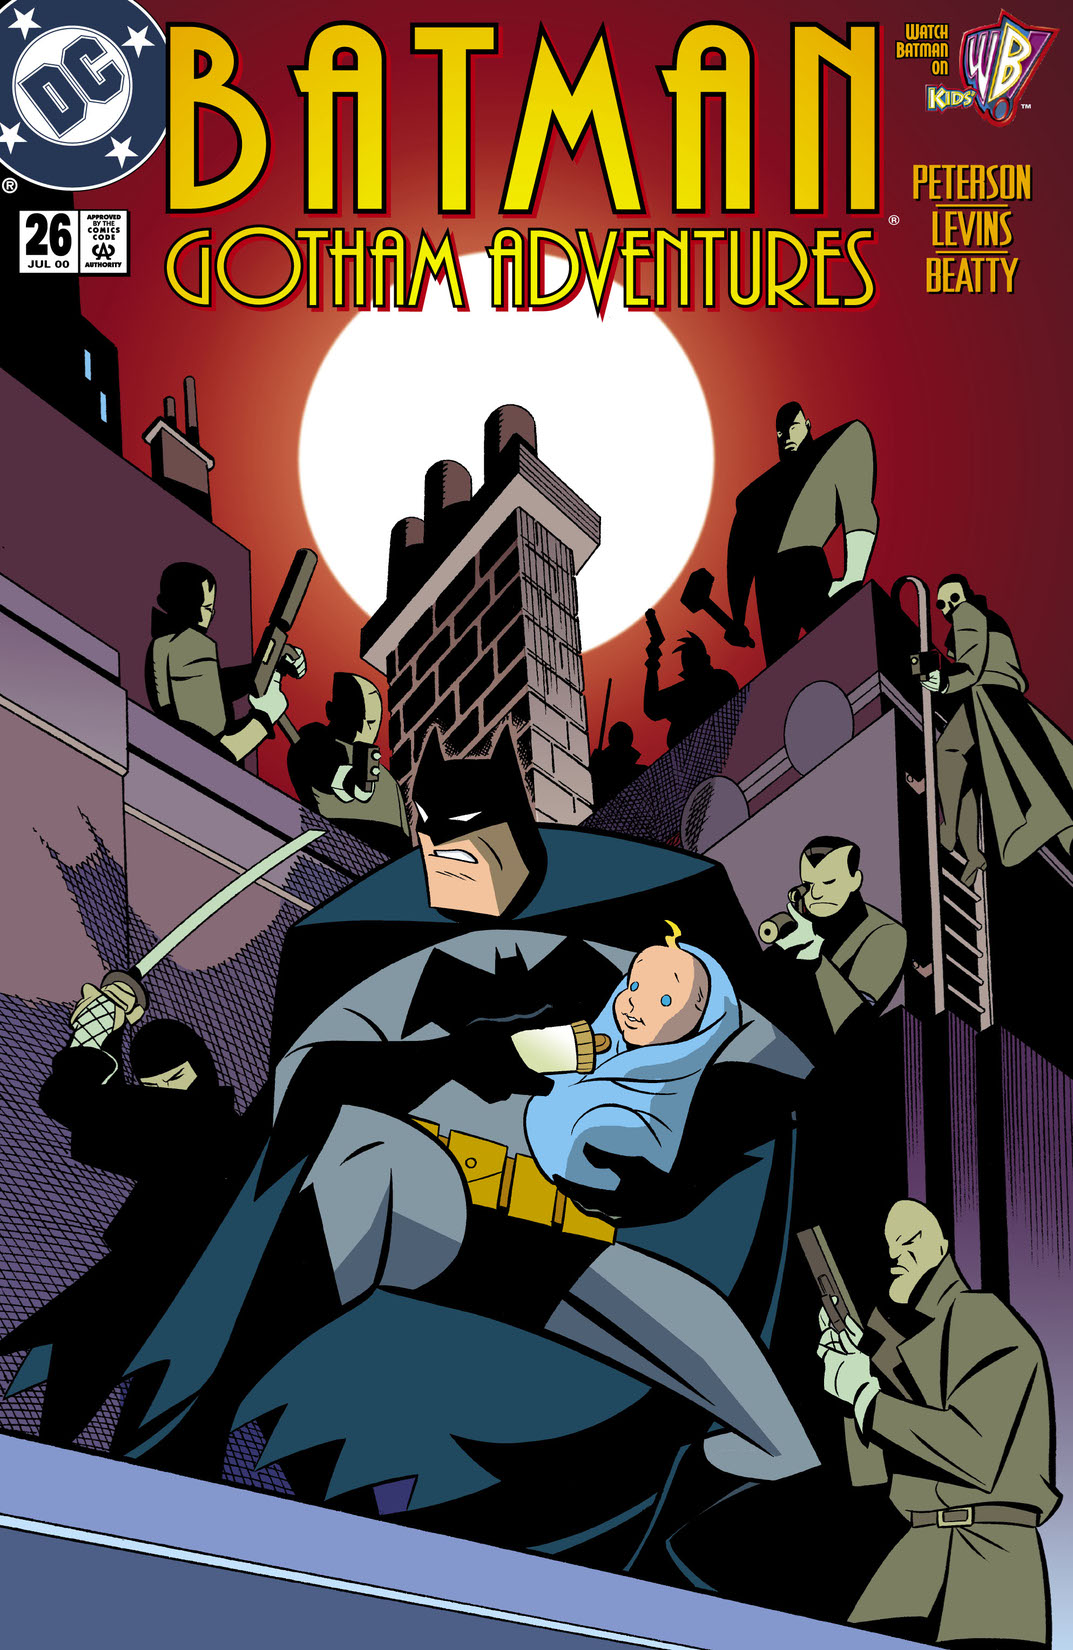 Batman: Gotham Adventures #26 preview images